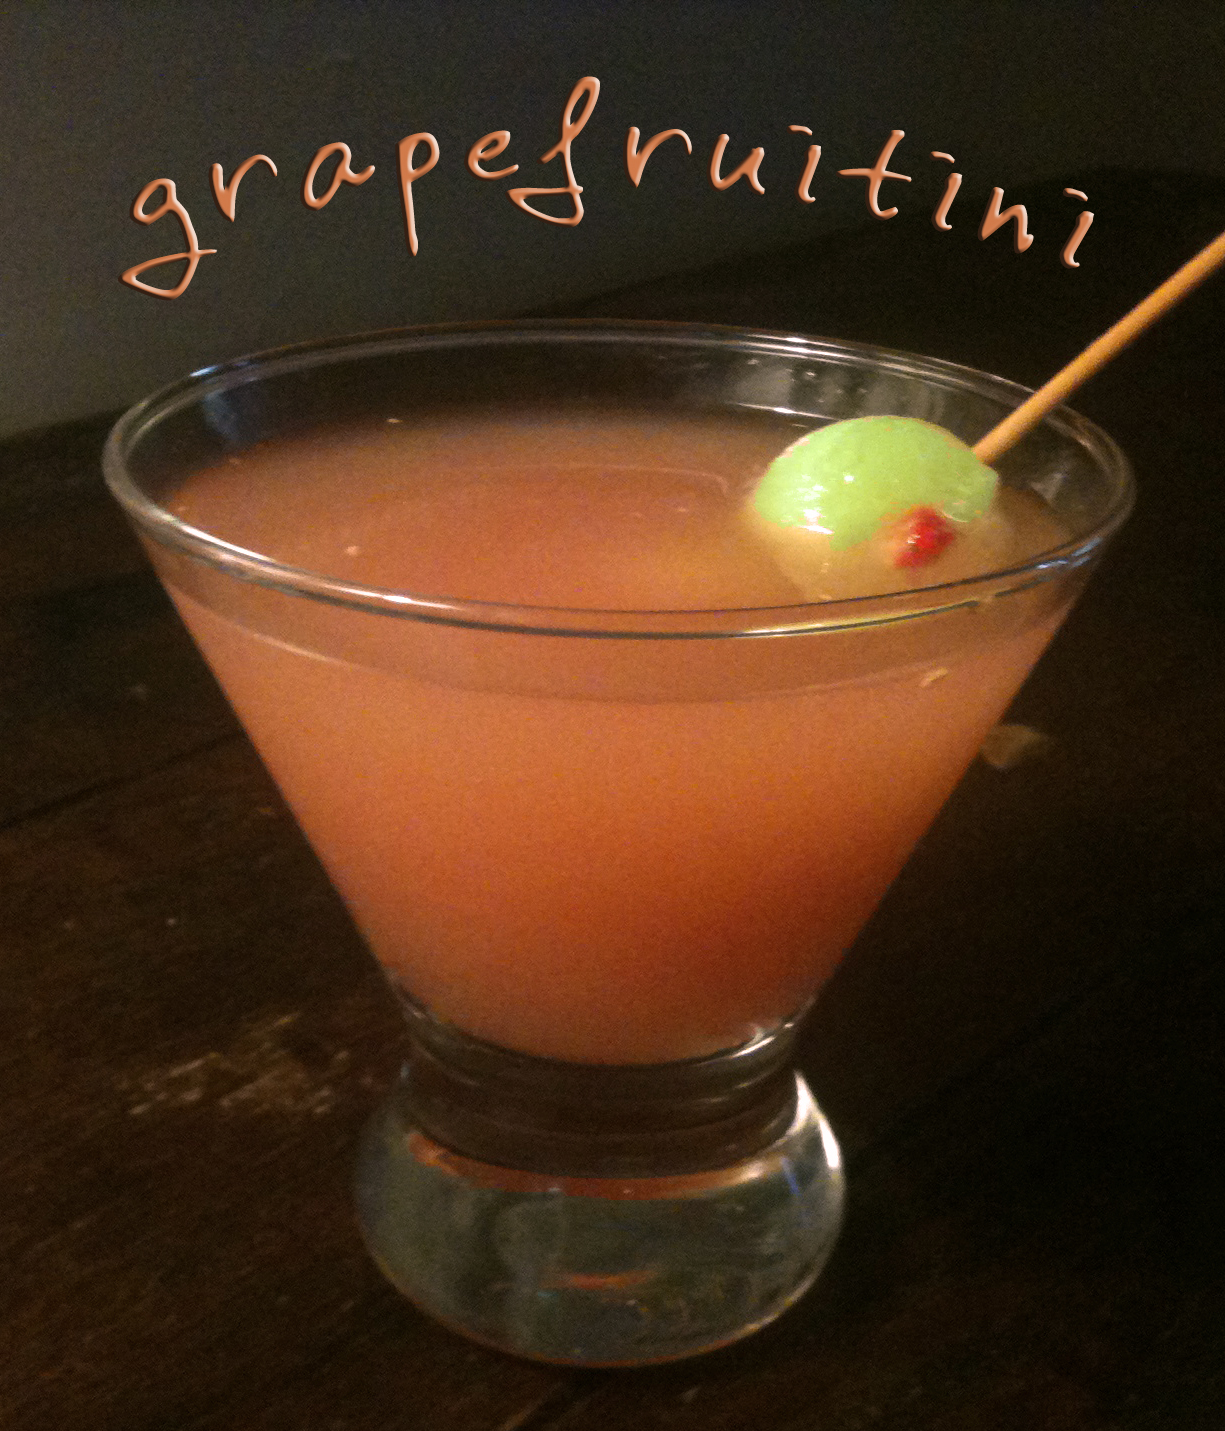 Danielle Hatfield's Grapefruitini